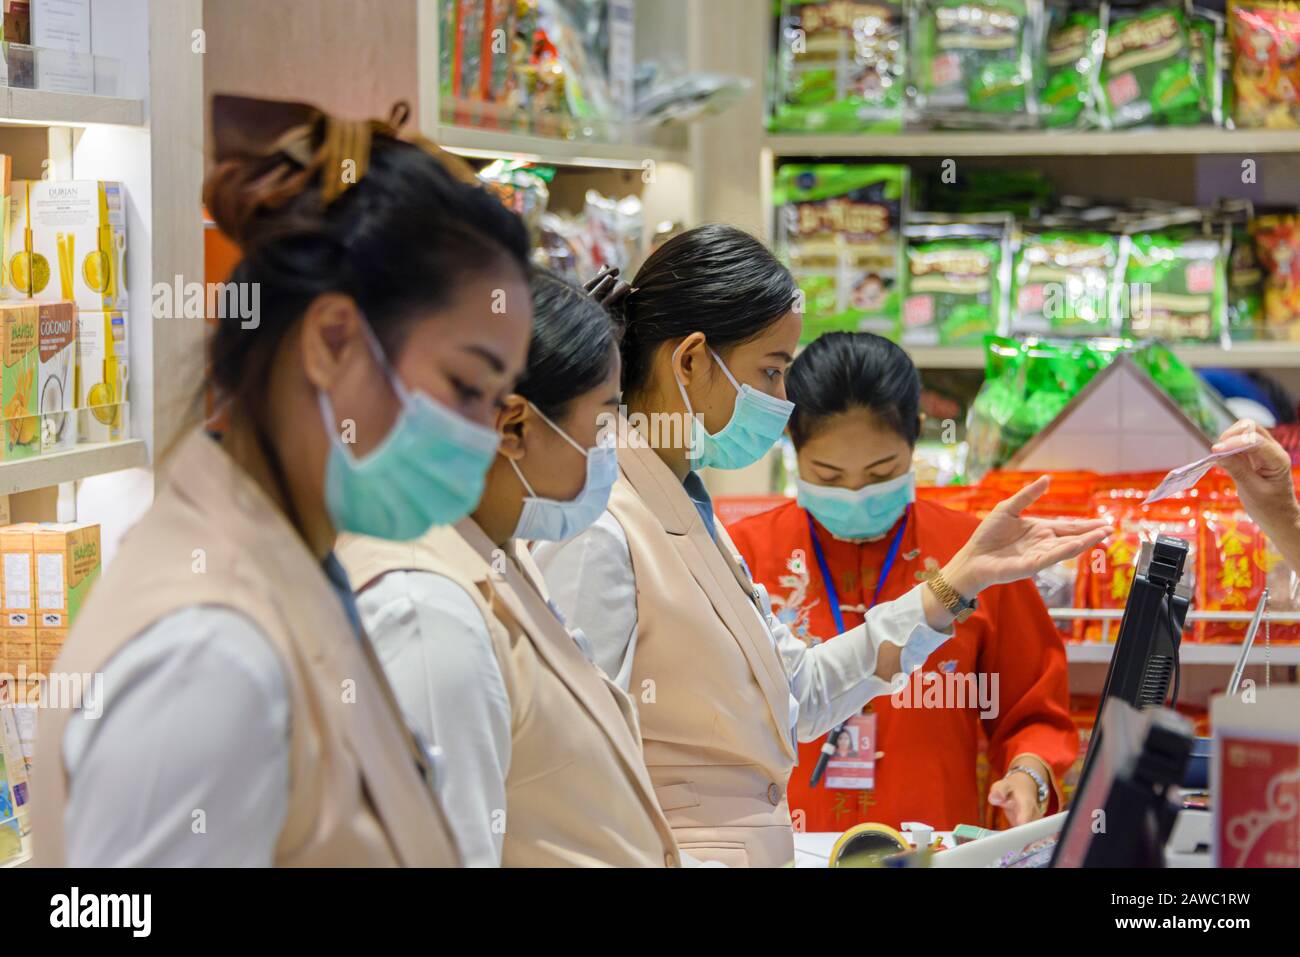 Aeropuerto De Phuket, Tailandia. 31 De Enero De 2020. El personal de la tienda usa máscaras quirúrgicas para prevenir la propagación del virus COVID COVID-19 2019-nCoV 2019 nCoV Coronavirus Corona durante la epidemia actual. Foto de stock